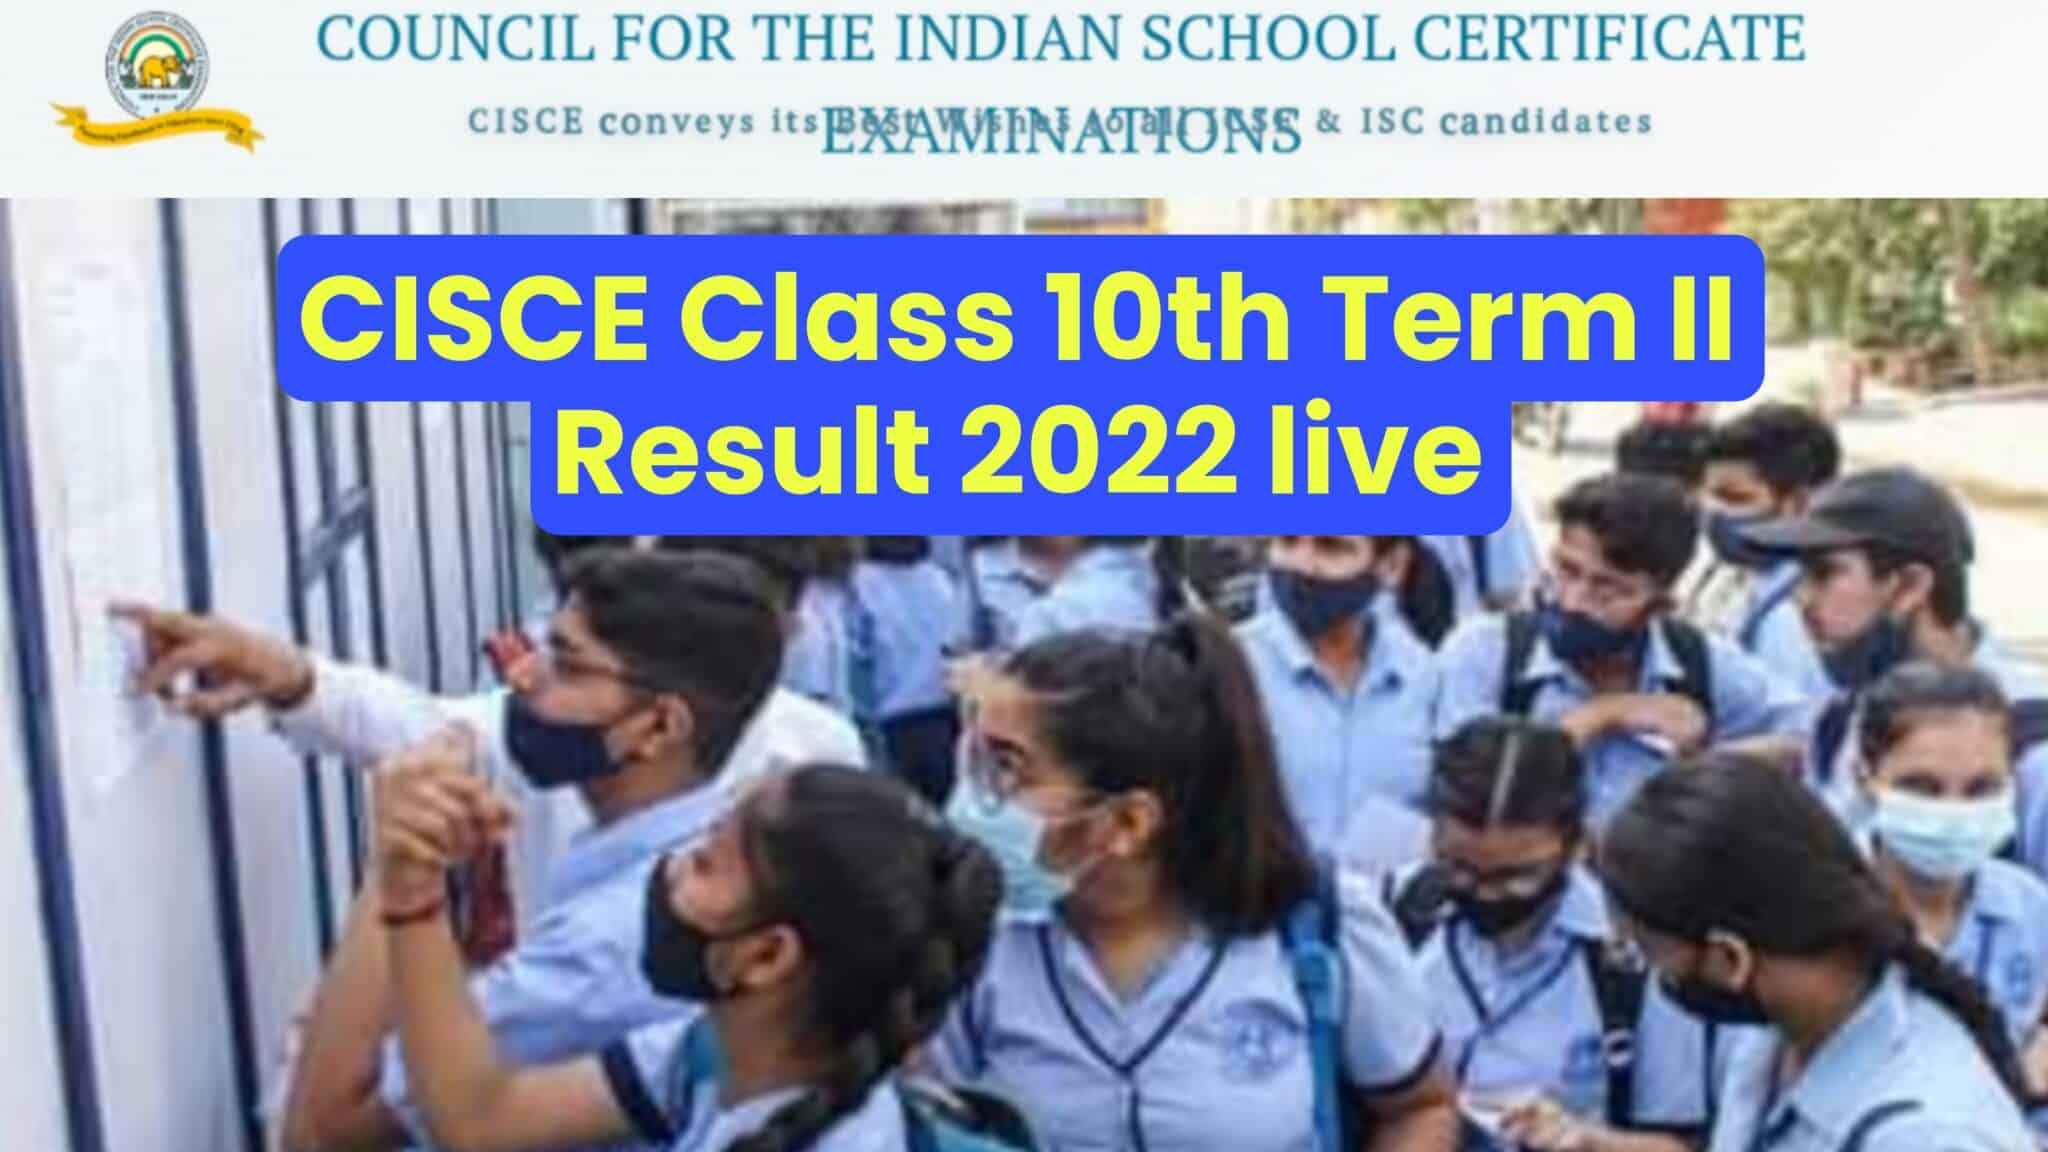 CISCE Class 10th Second Term Result 2022 हुआ जारी, जानें अन्य सभी महत्वपूर्ण जानकारी